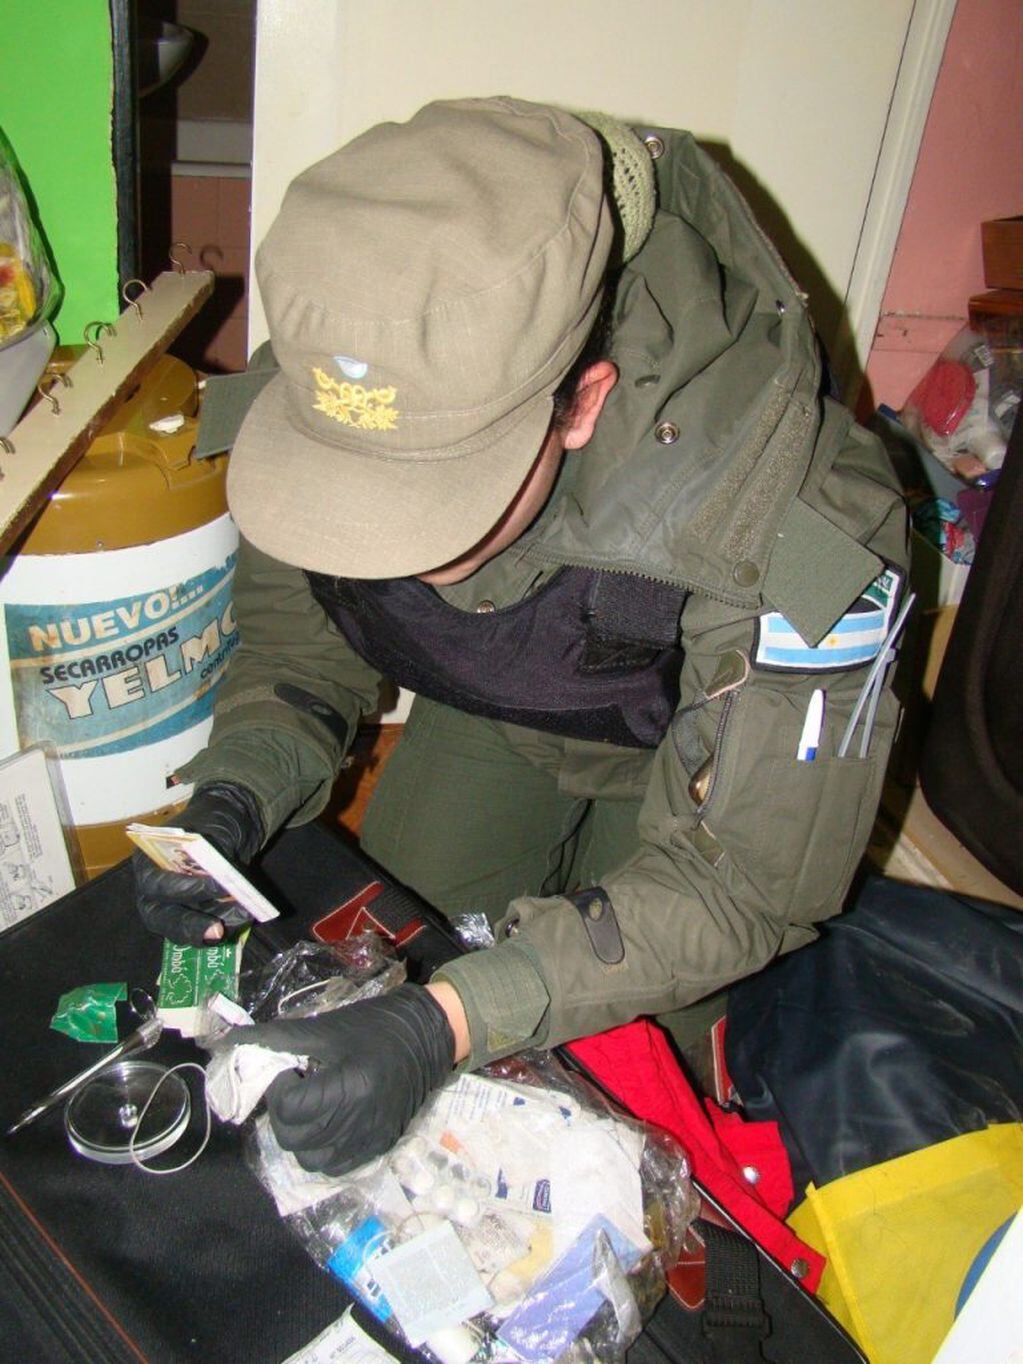 Durante los allanamientos en casas de cambio ilegal encontraron drogas y elementos de corte, además de divisas extranjeras.